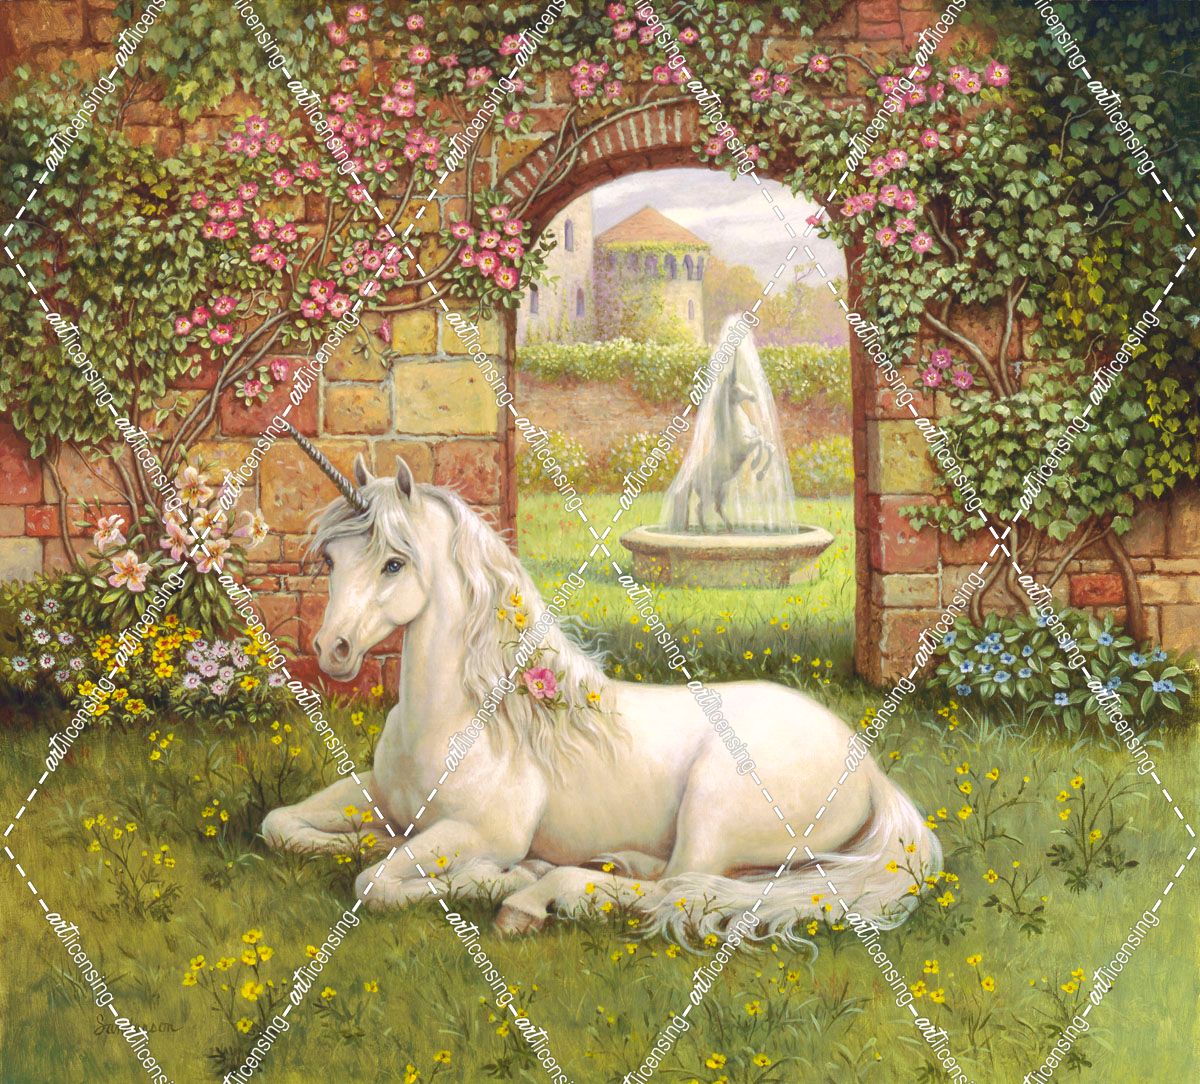 Unicorn Garden